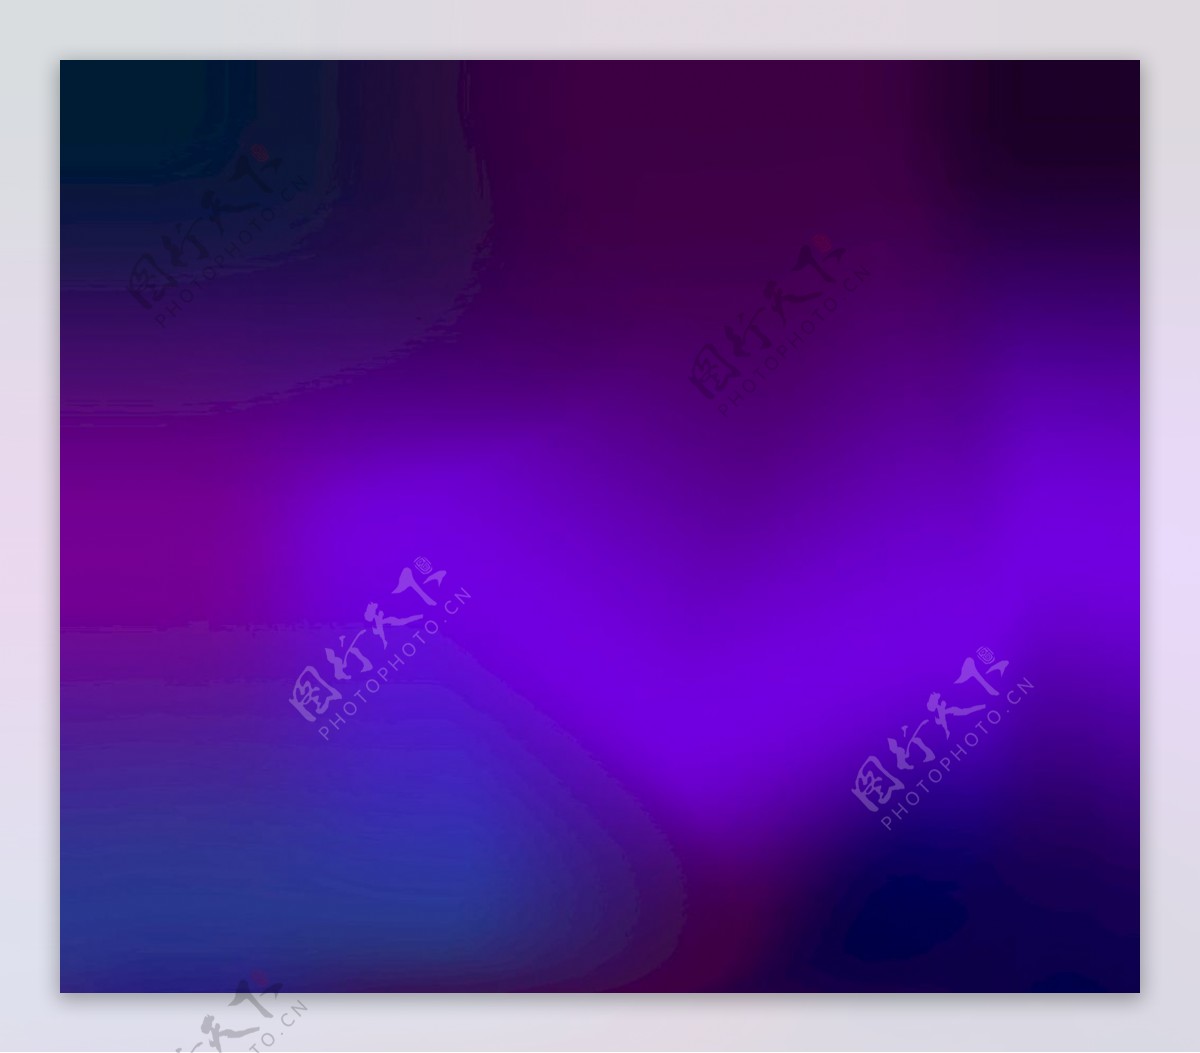 紫色抽象背景